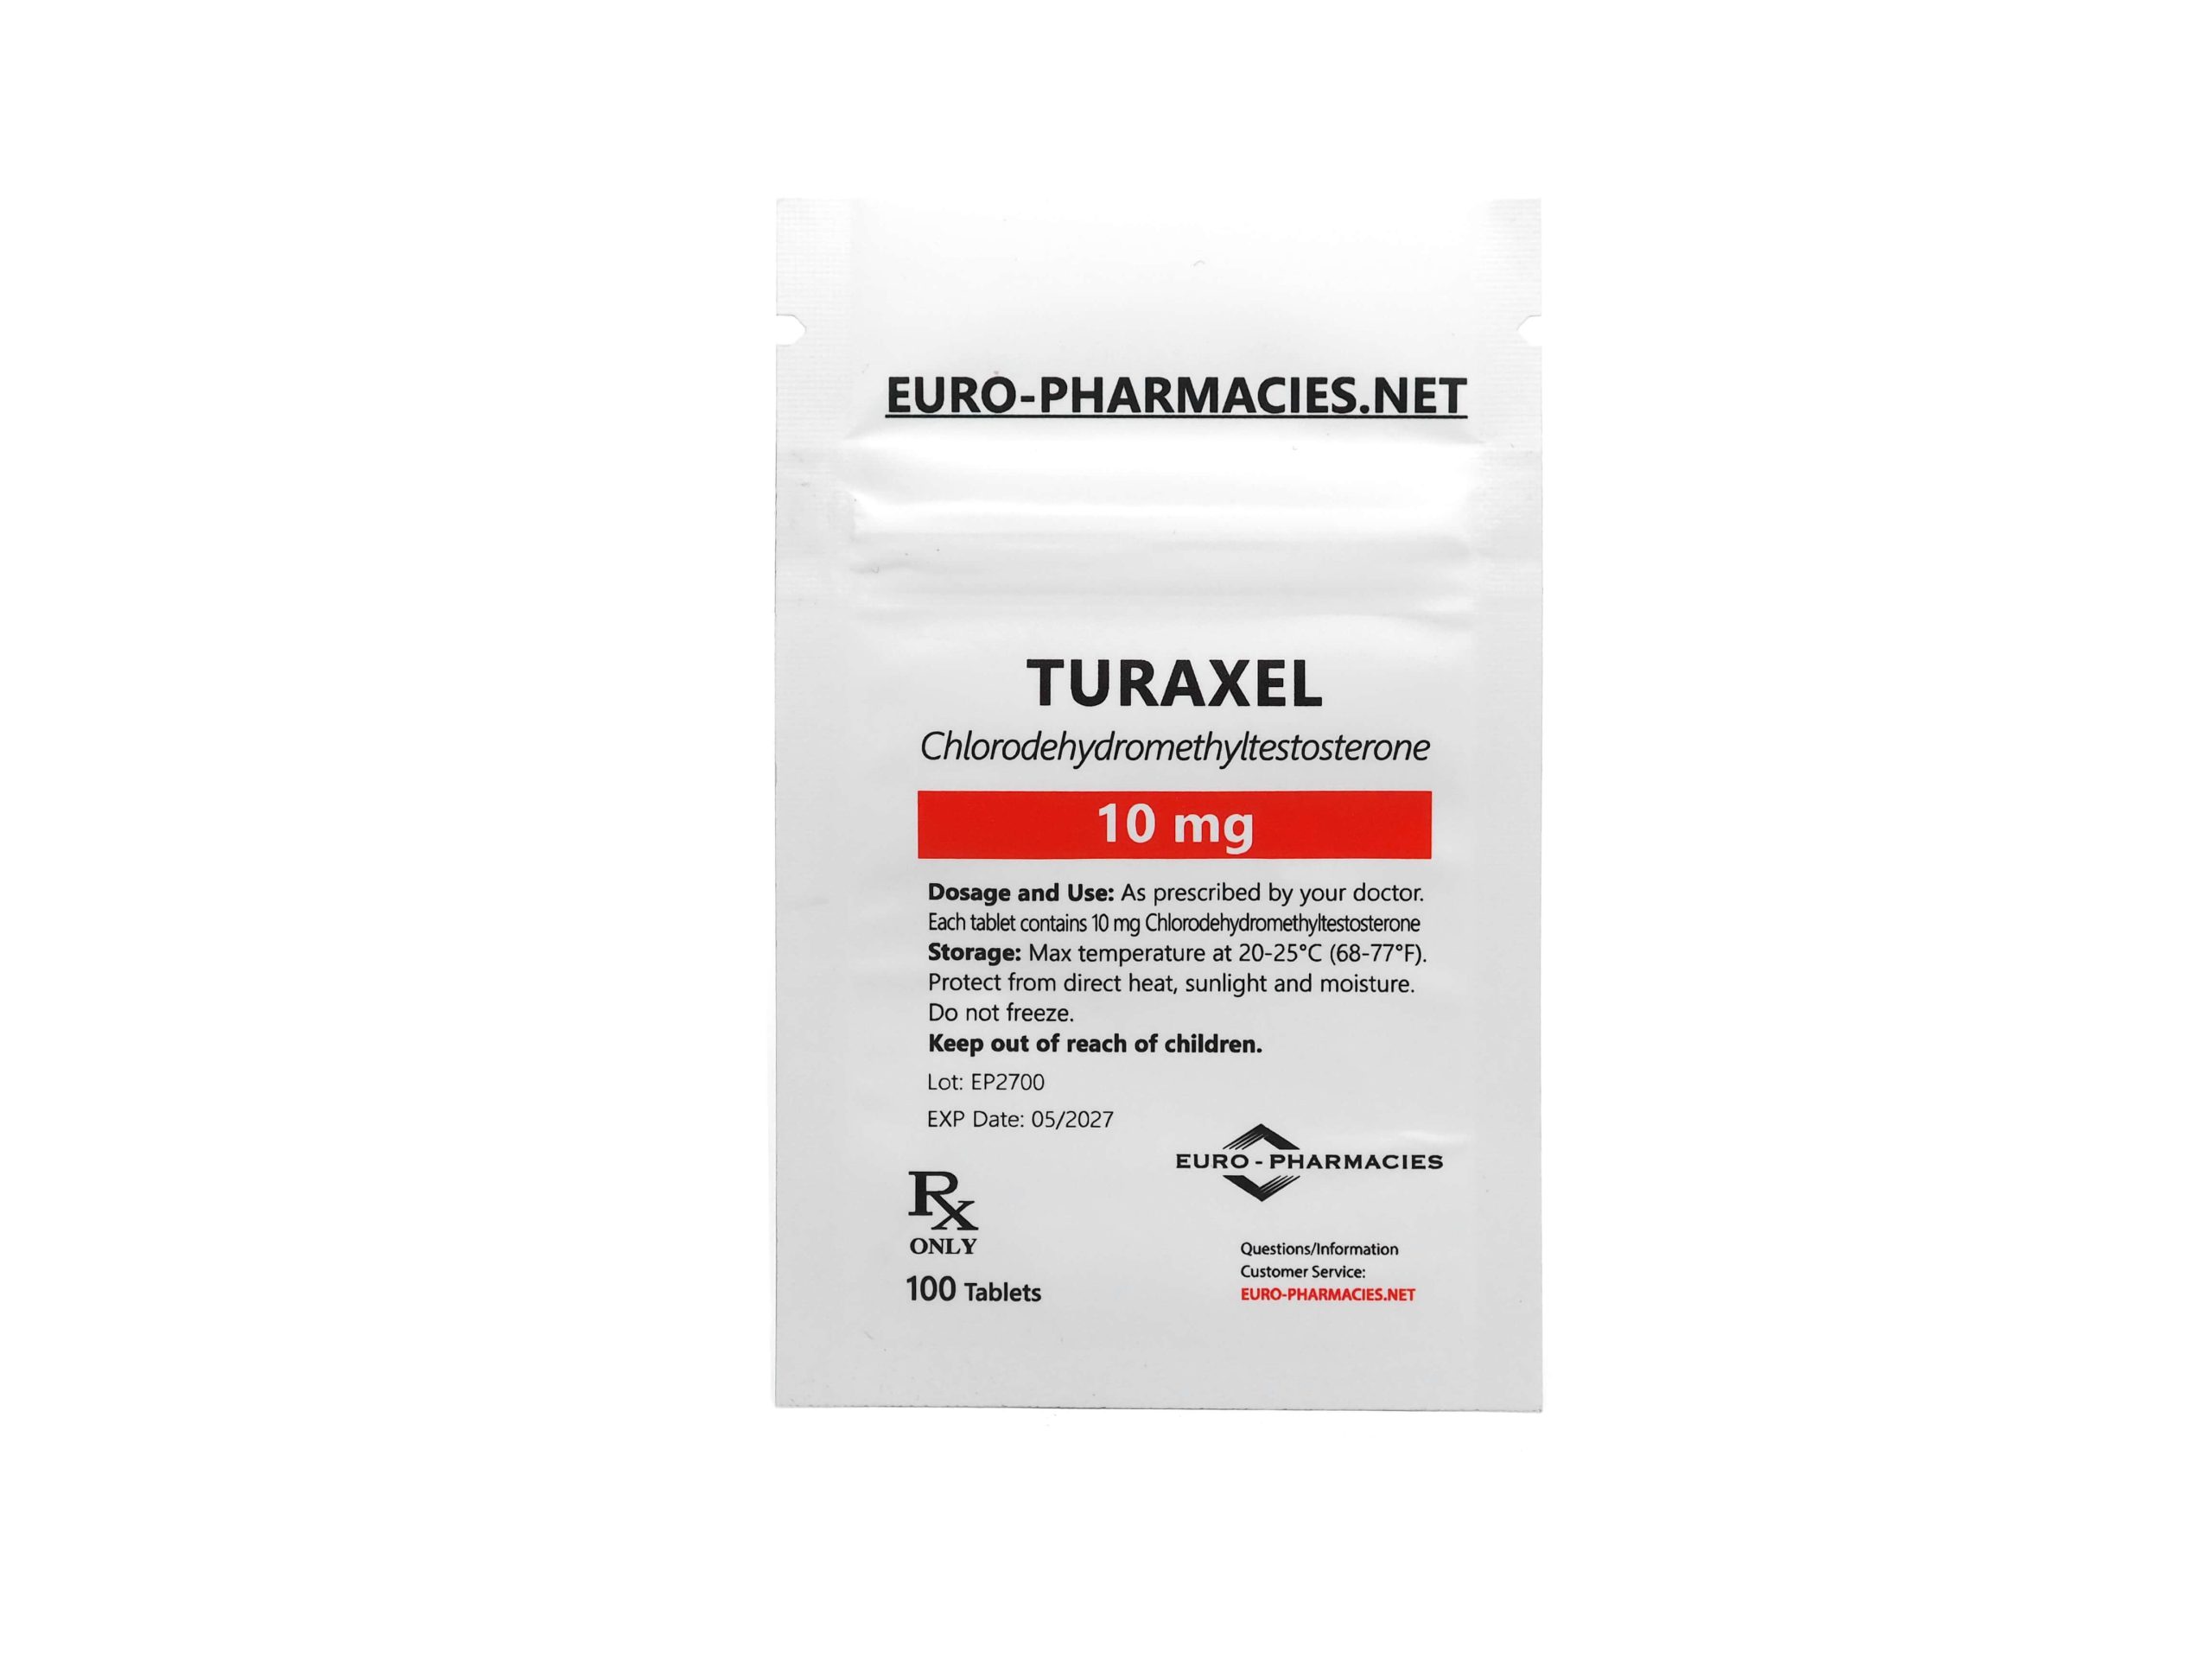 Eurofarmacias Bolsa Turaxel 10 (Turanabol)